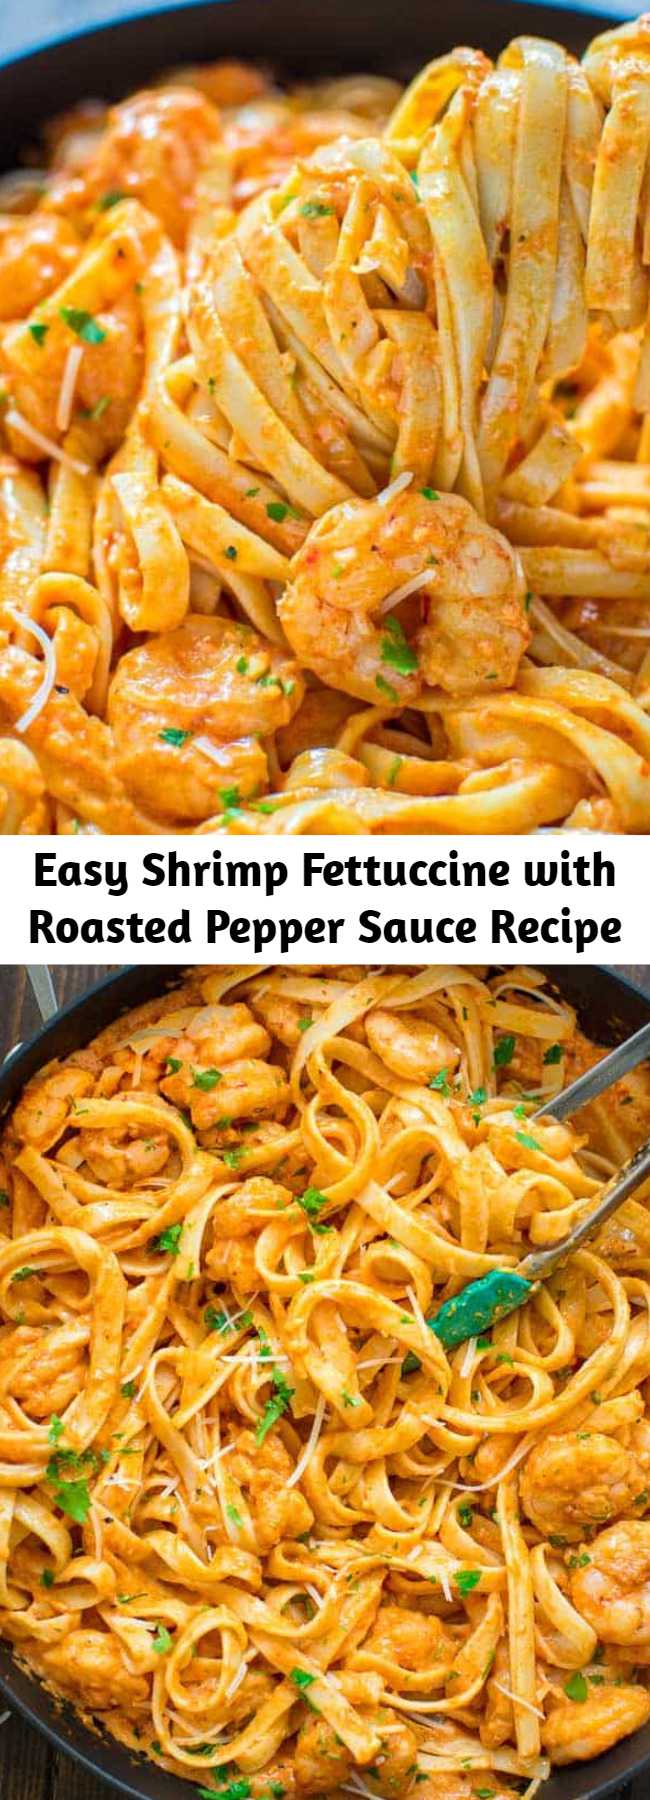 Easy Shrimp Fettuccine with Roasted Pepper Sauce Recipe - Mom Secret ...